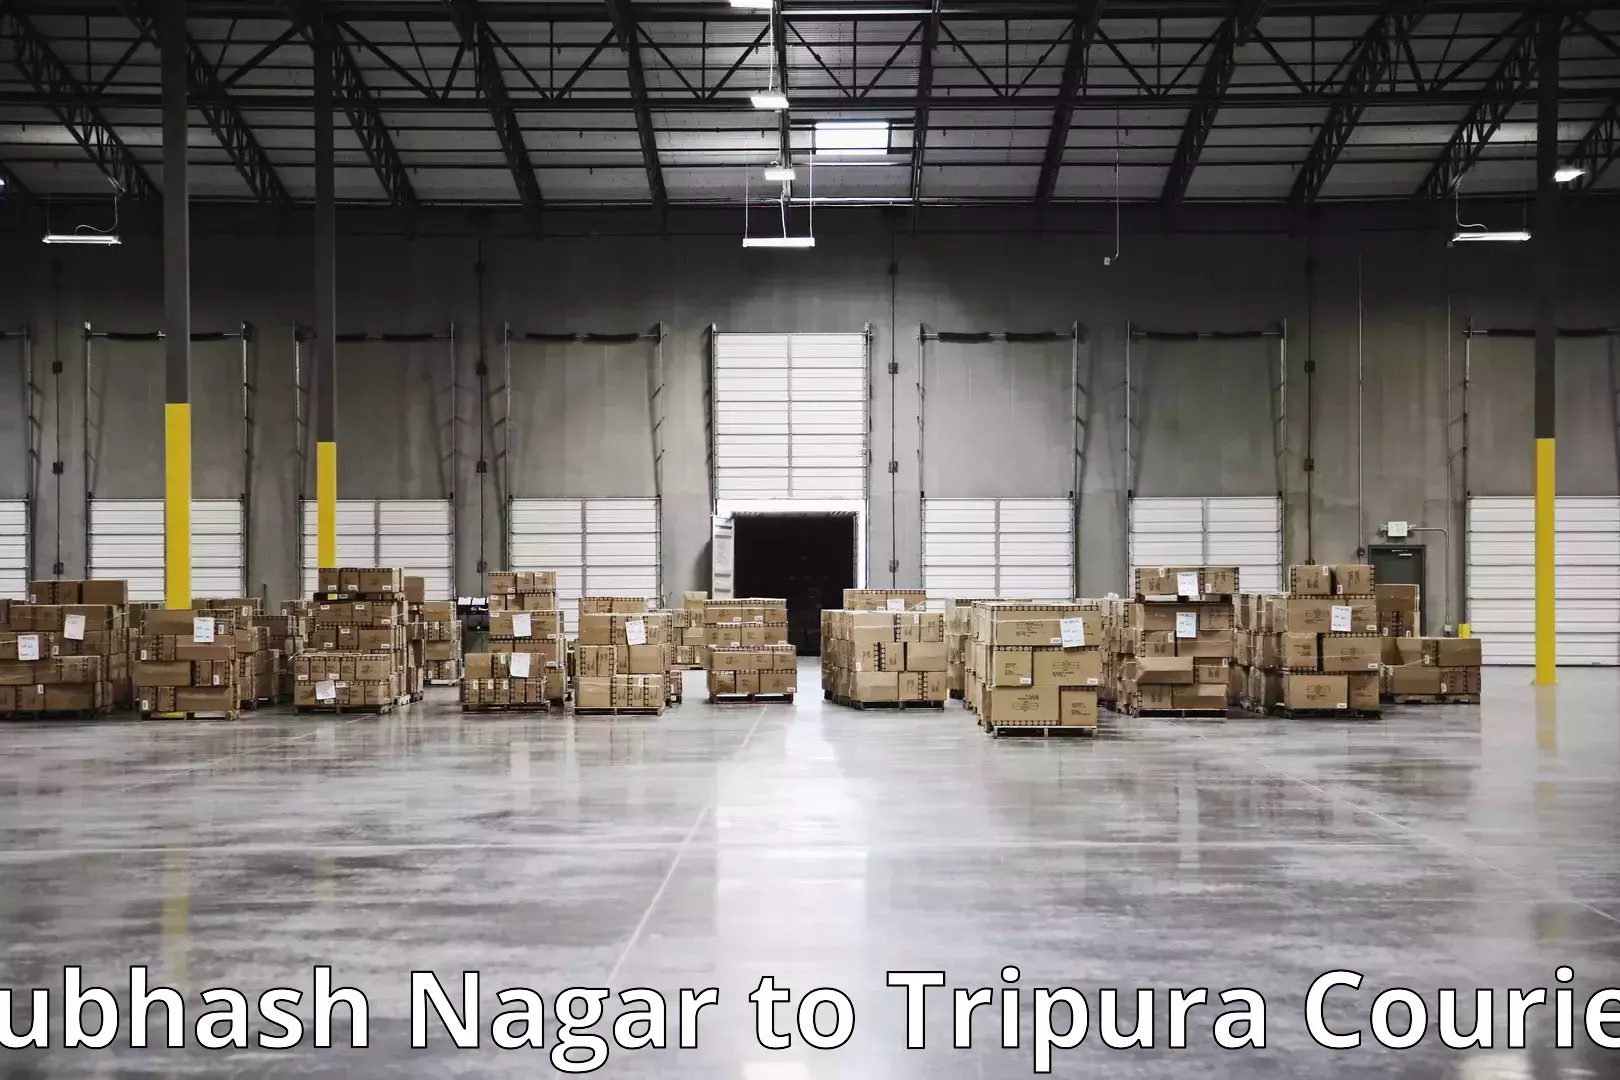 Furniture moving experts in Subhash Nagar to Manu Bazar